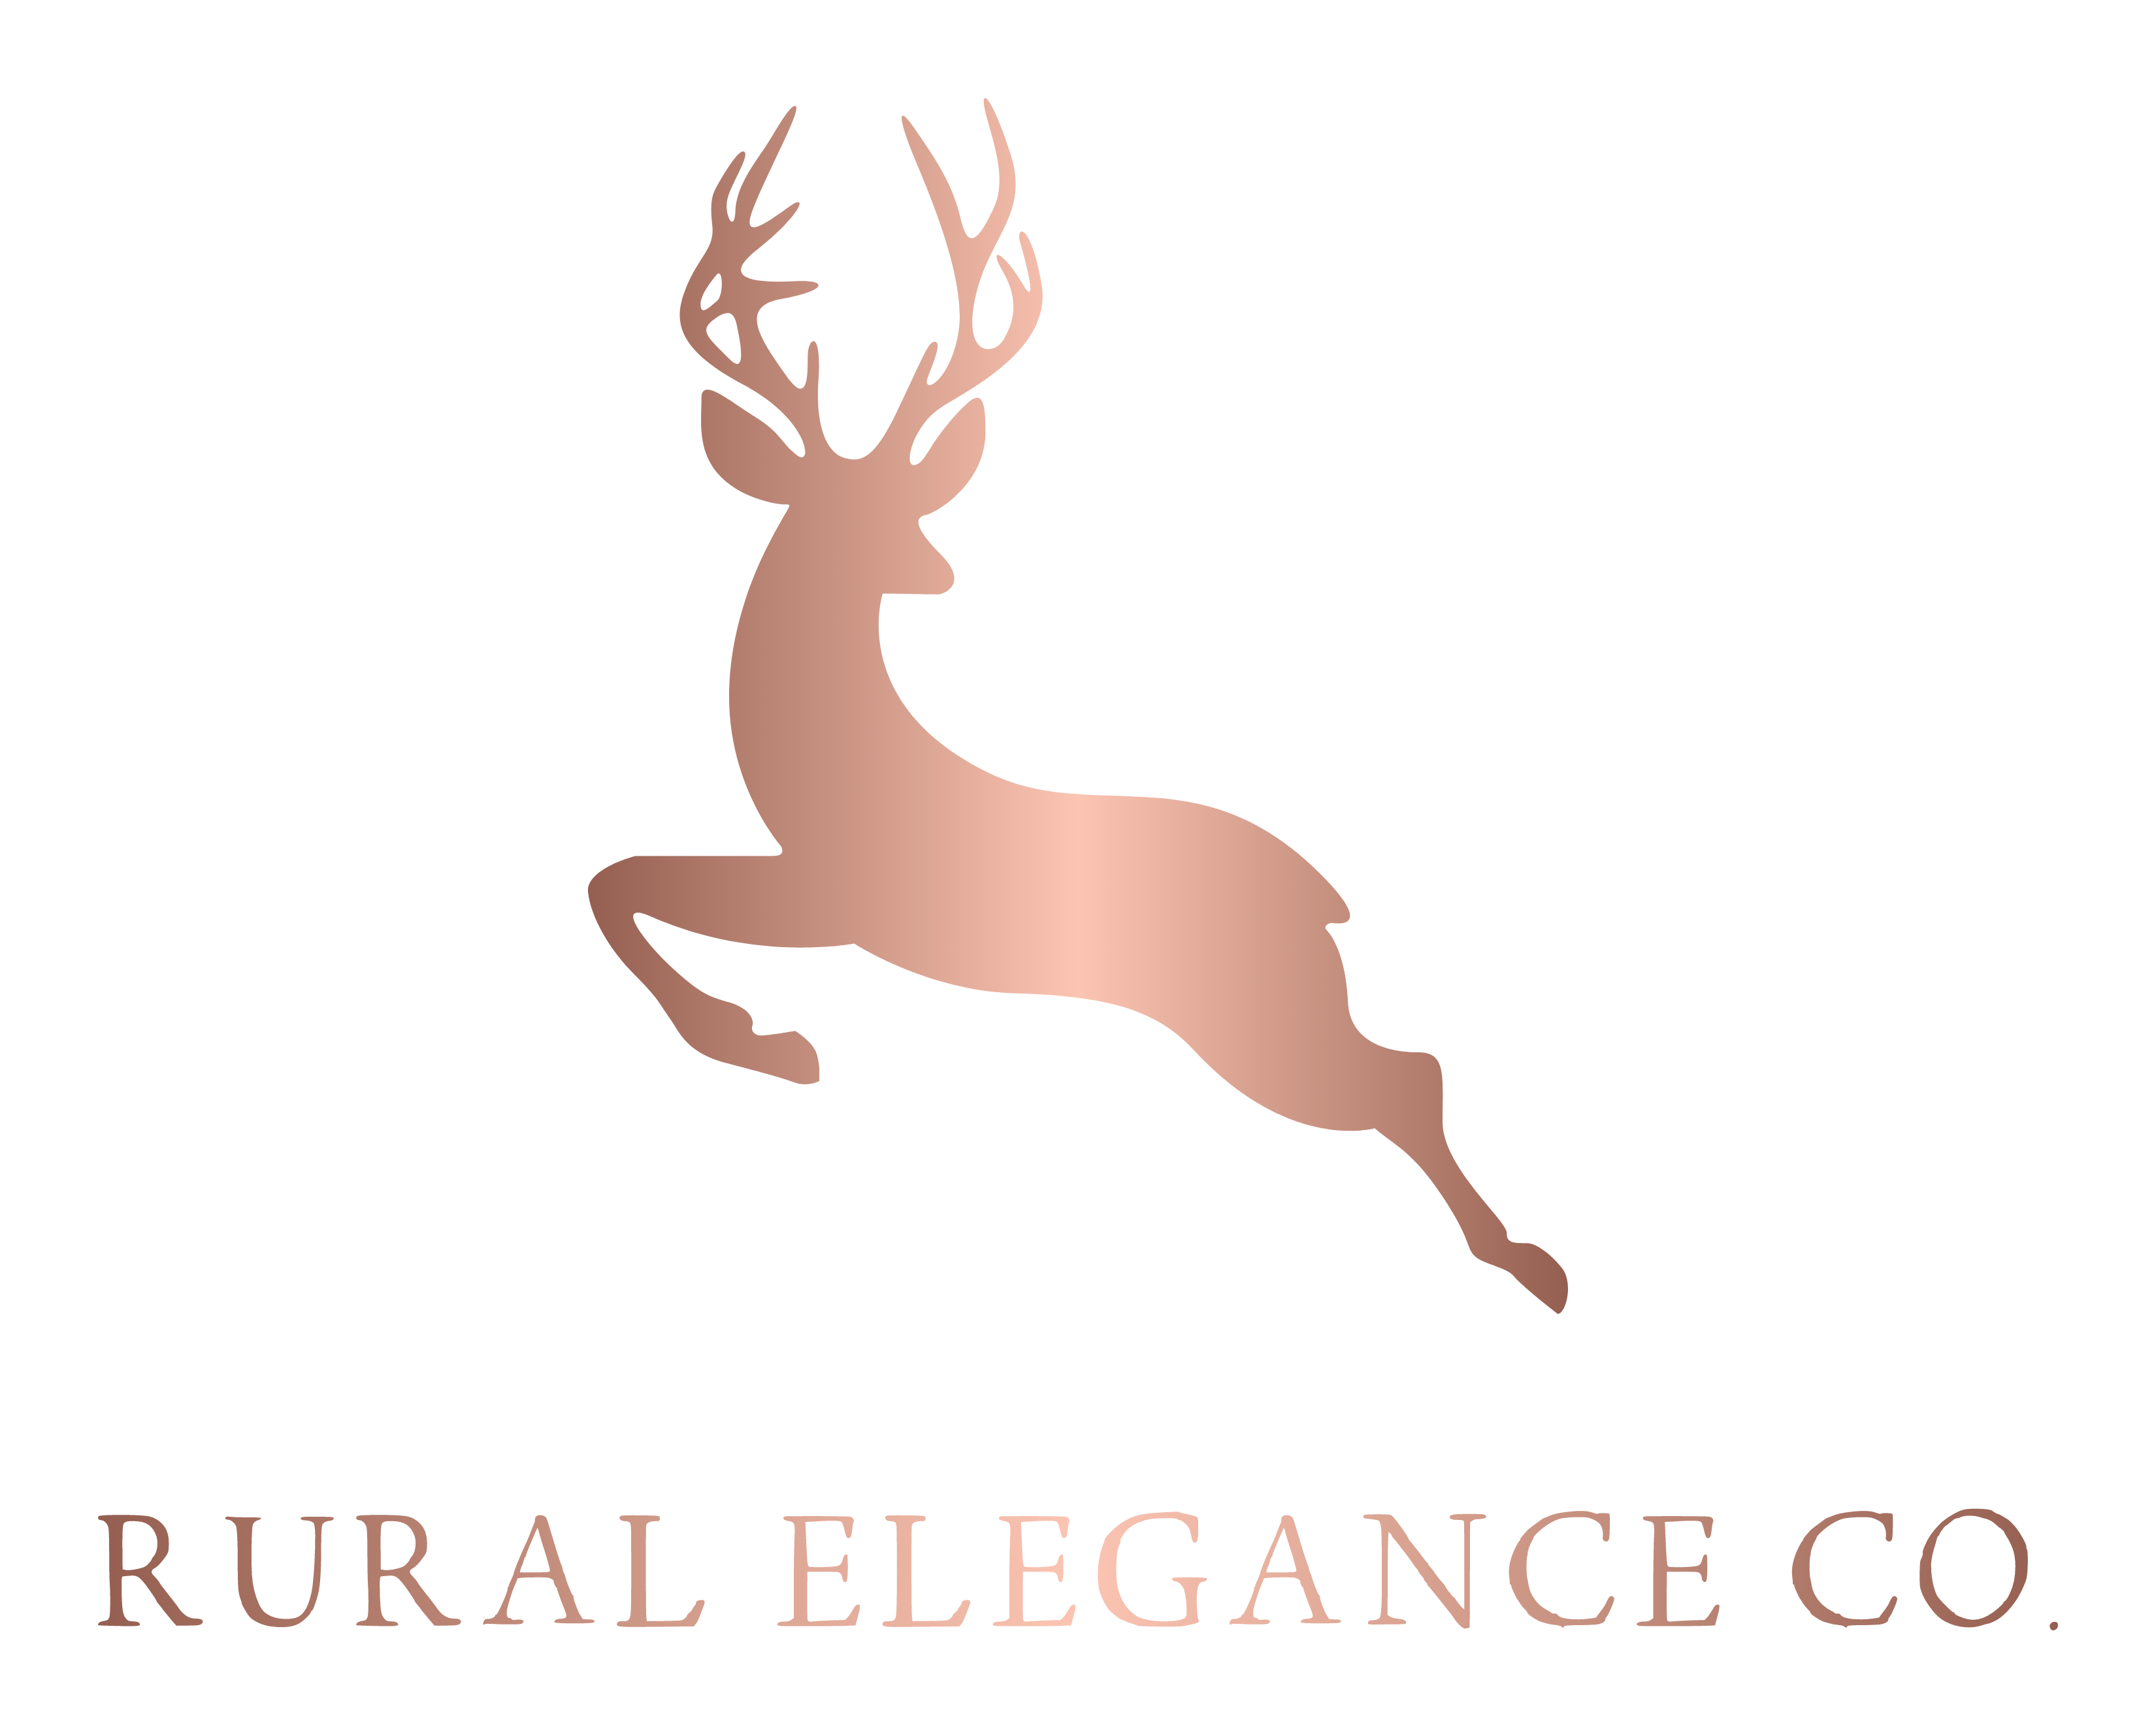 Rural Elegance Co.